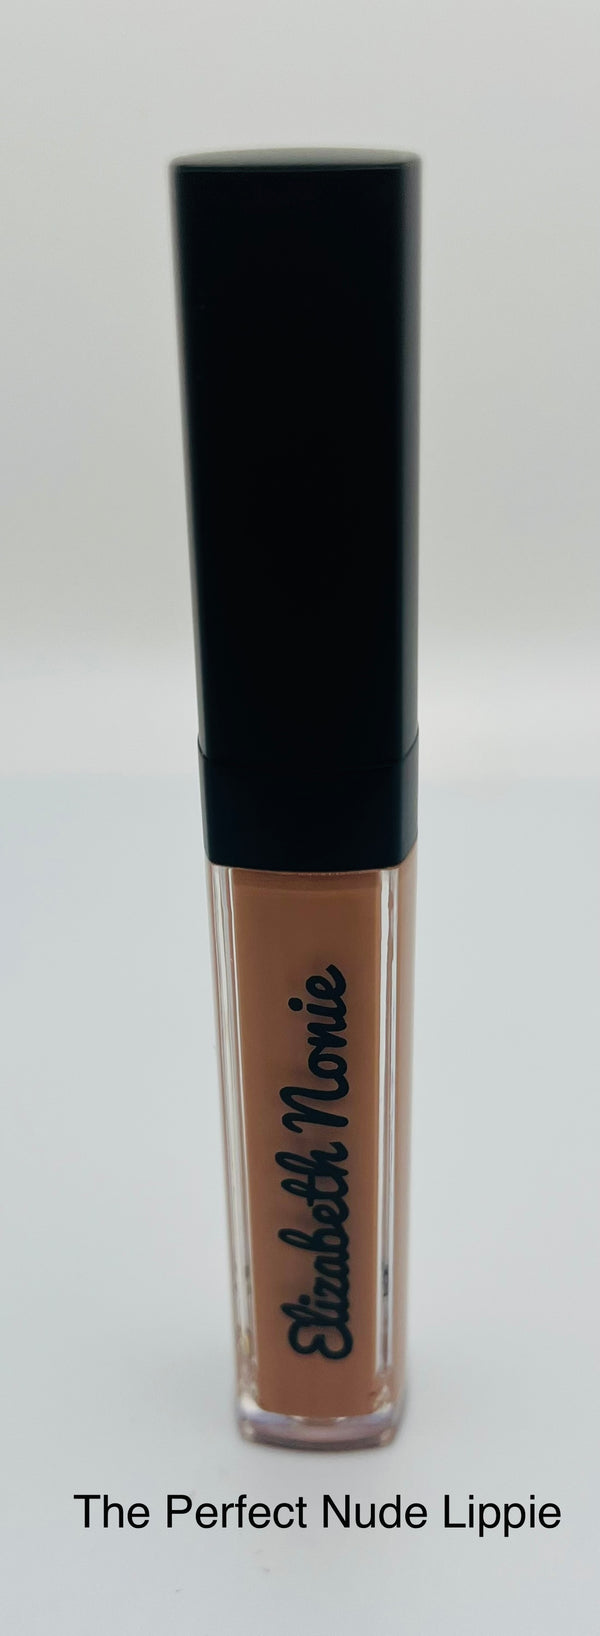 The Perfect Nude Lippie Matte Liquid Lipstick